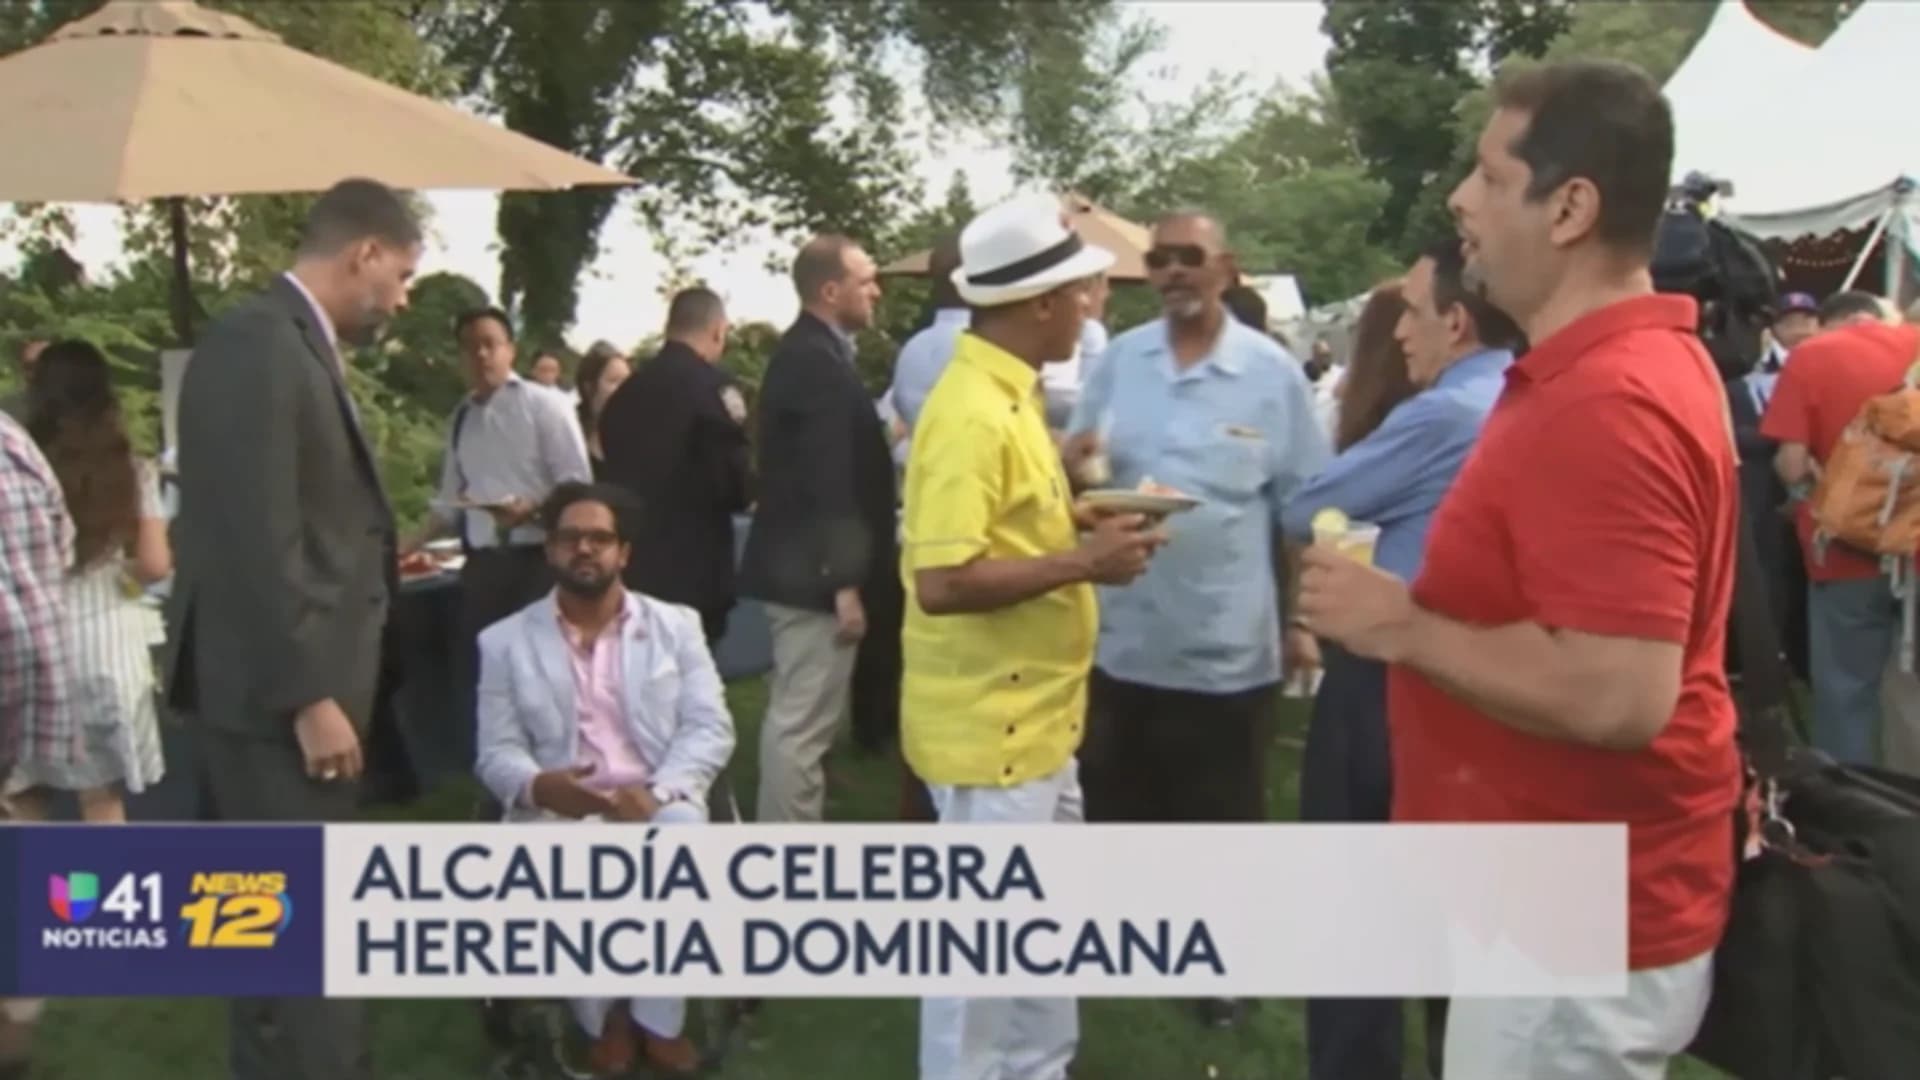 Univision 41 News Brief: Se acerca el desfile dominicano